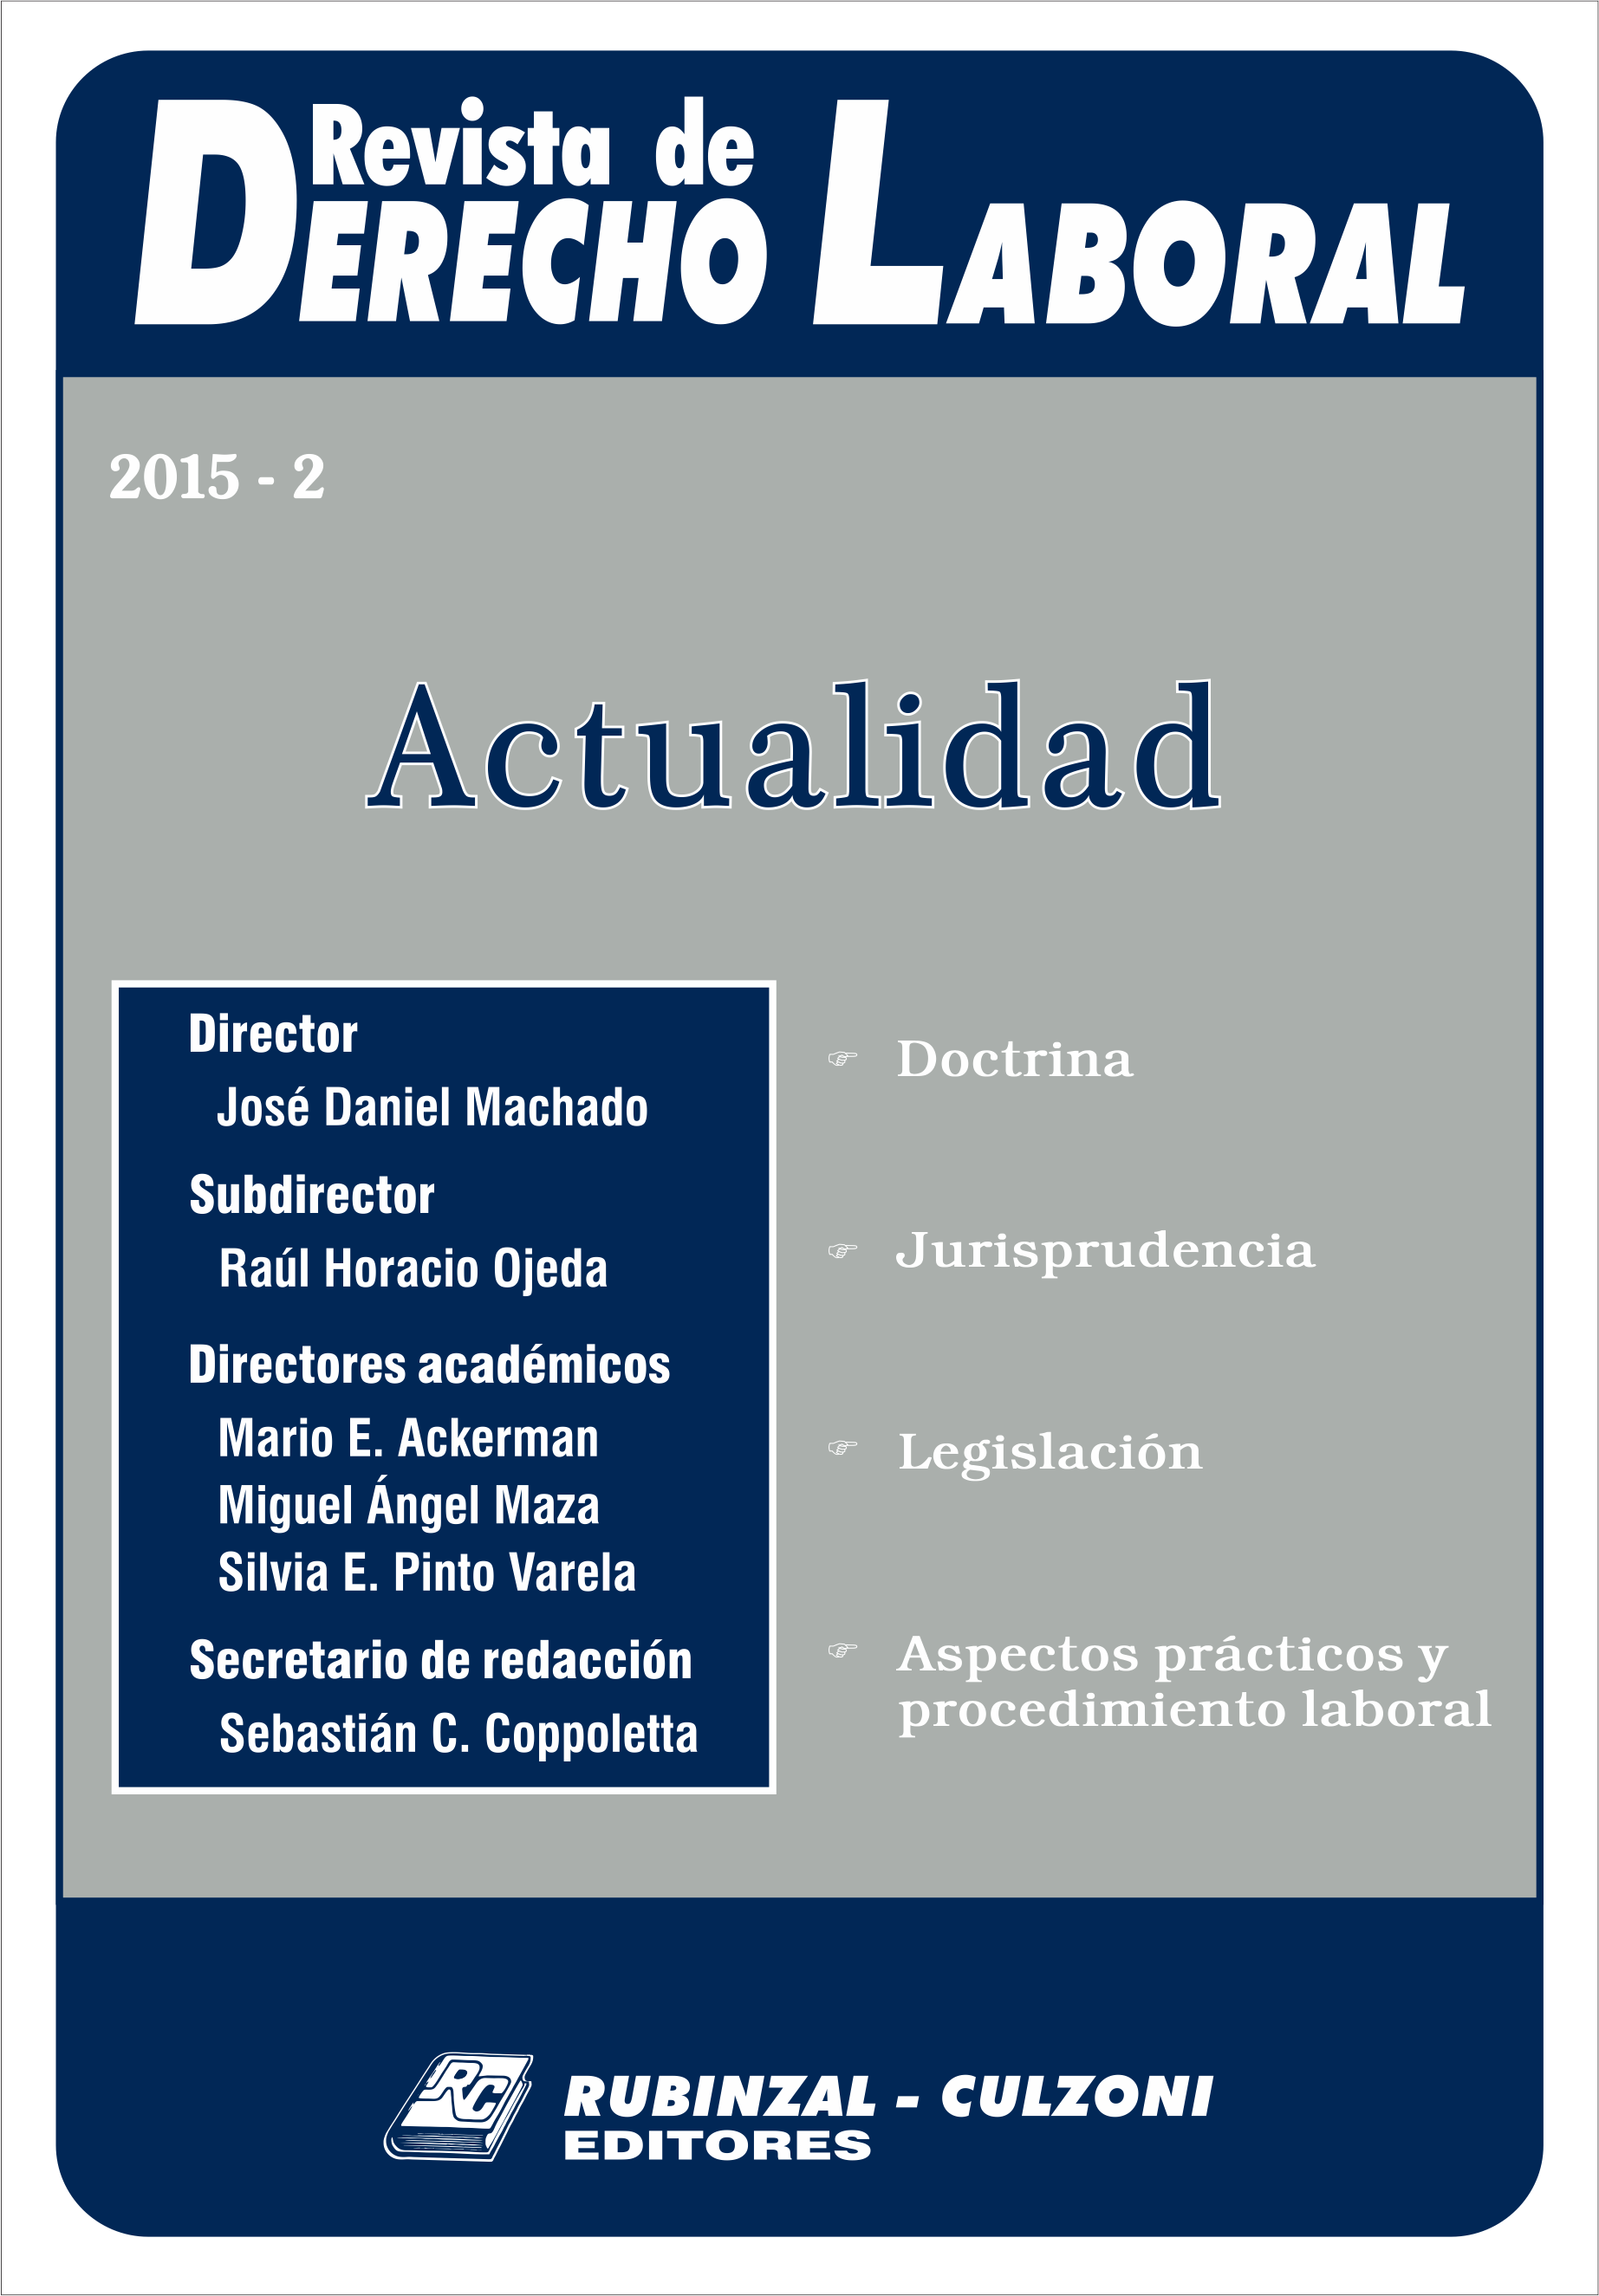 Revista de Derecho Laboral Actualidad - Año 2015 - 2.